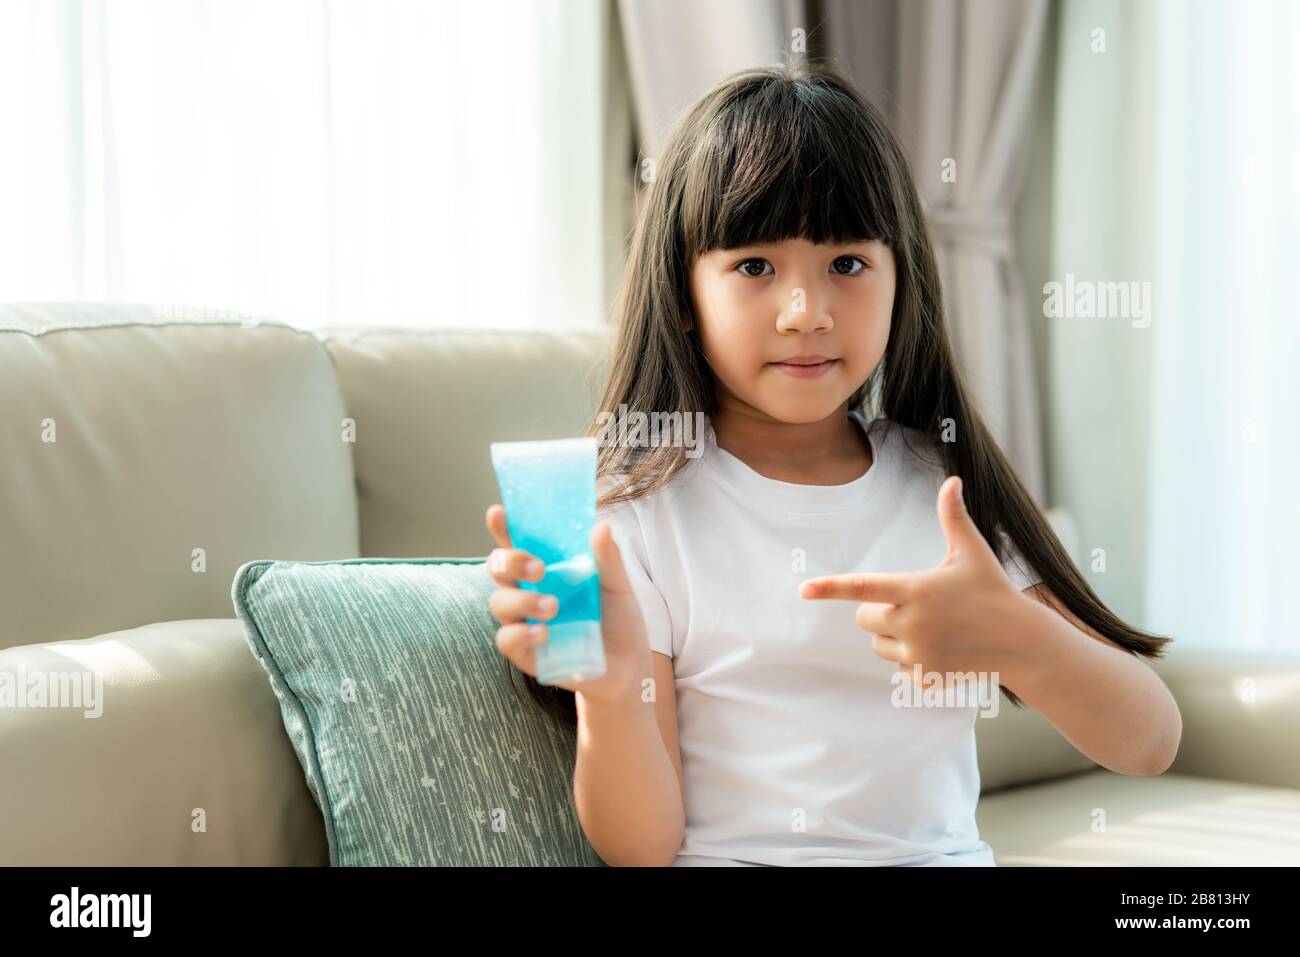 Asiatisches Kindermädchen, das Alkohol zur antiseptischen Gelprävention verwendet und zeigt, Hände häufig säubert, Infektionen vorbeugt, Covid-19 ausbricht, Mädchen waschen ha Stockfoto